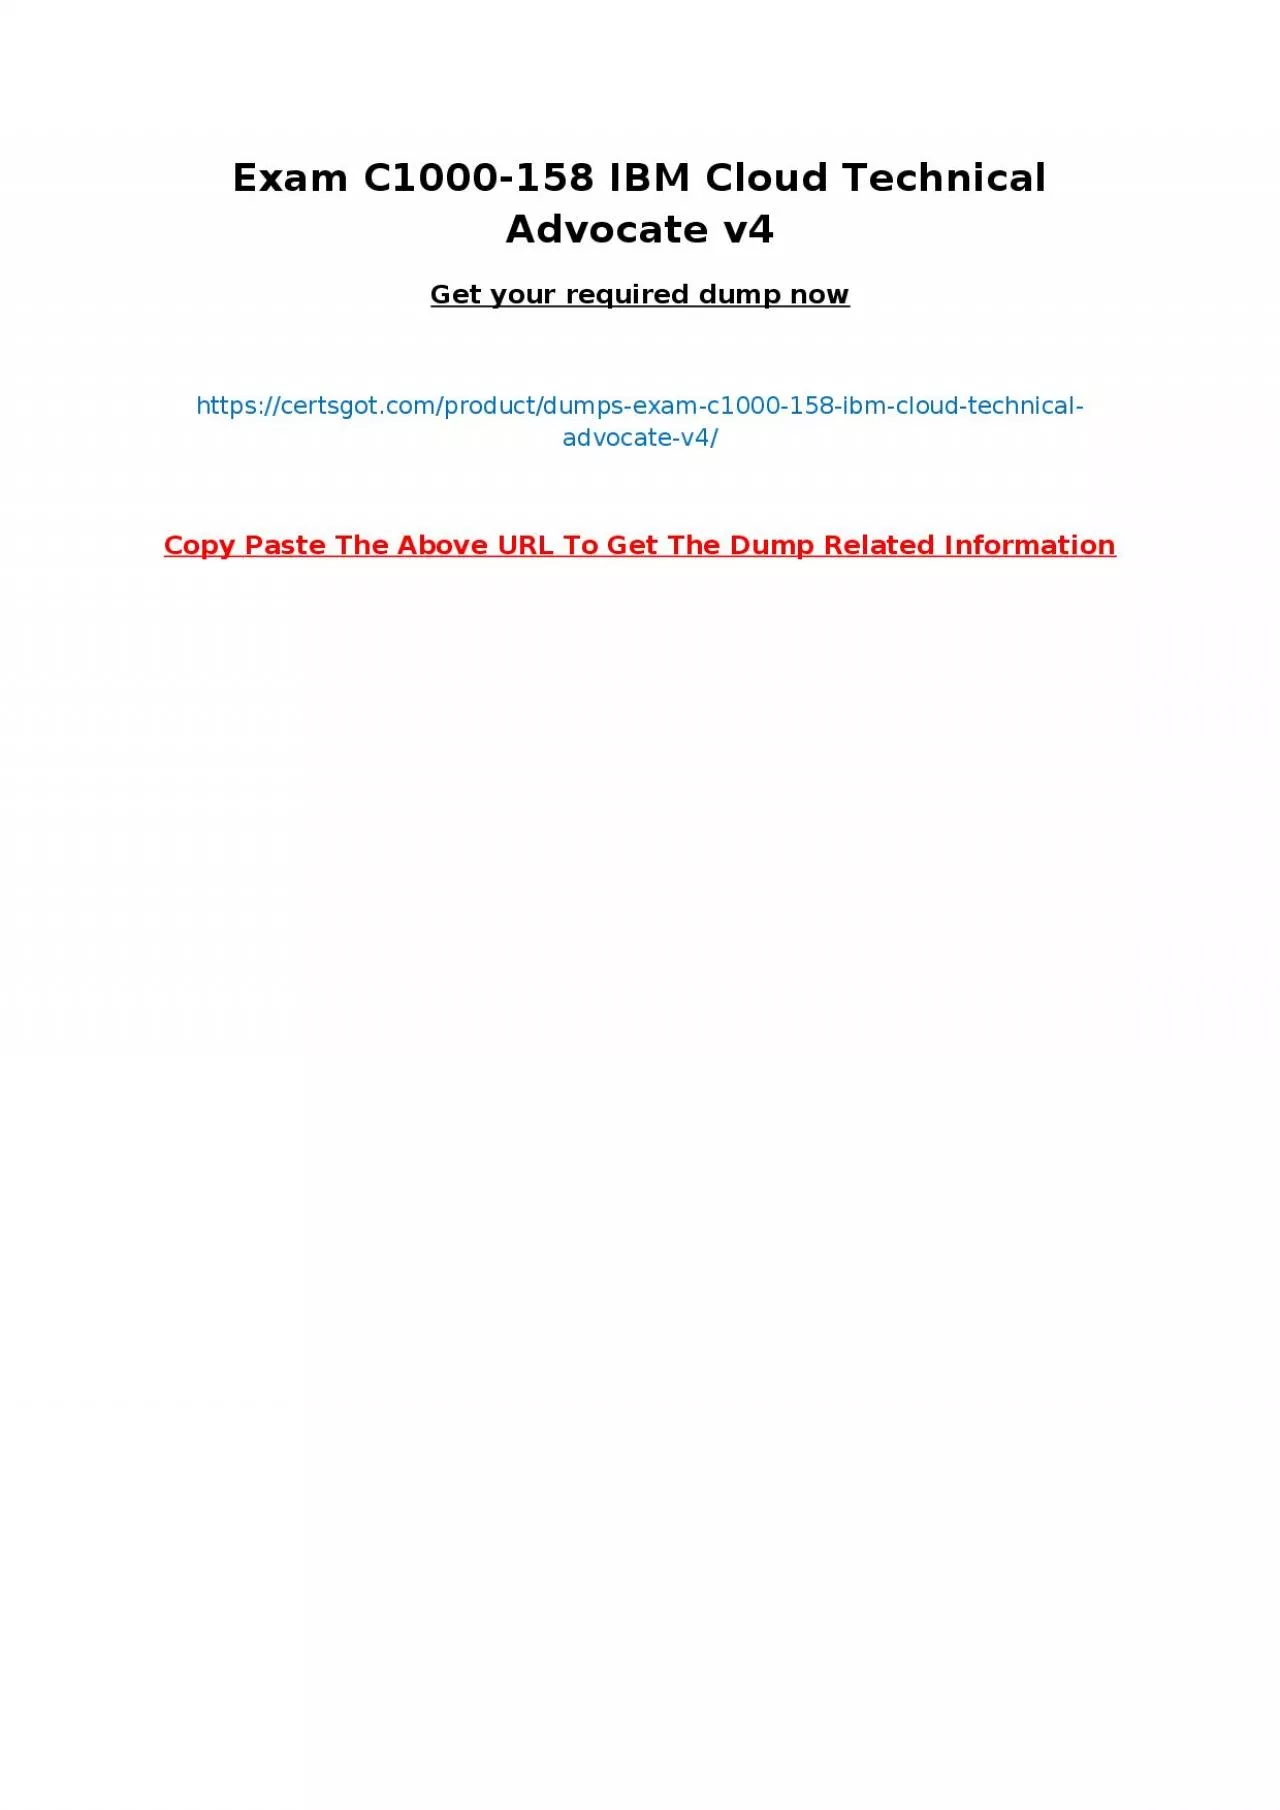 Exam C1000-158 IBM Cloud Technical Advocate v4